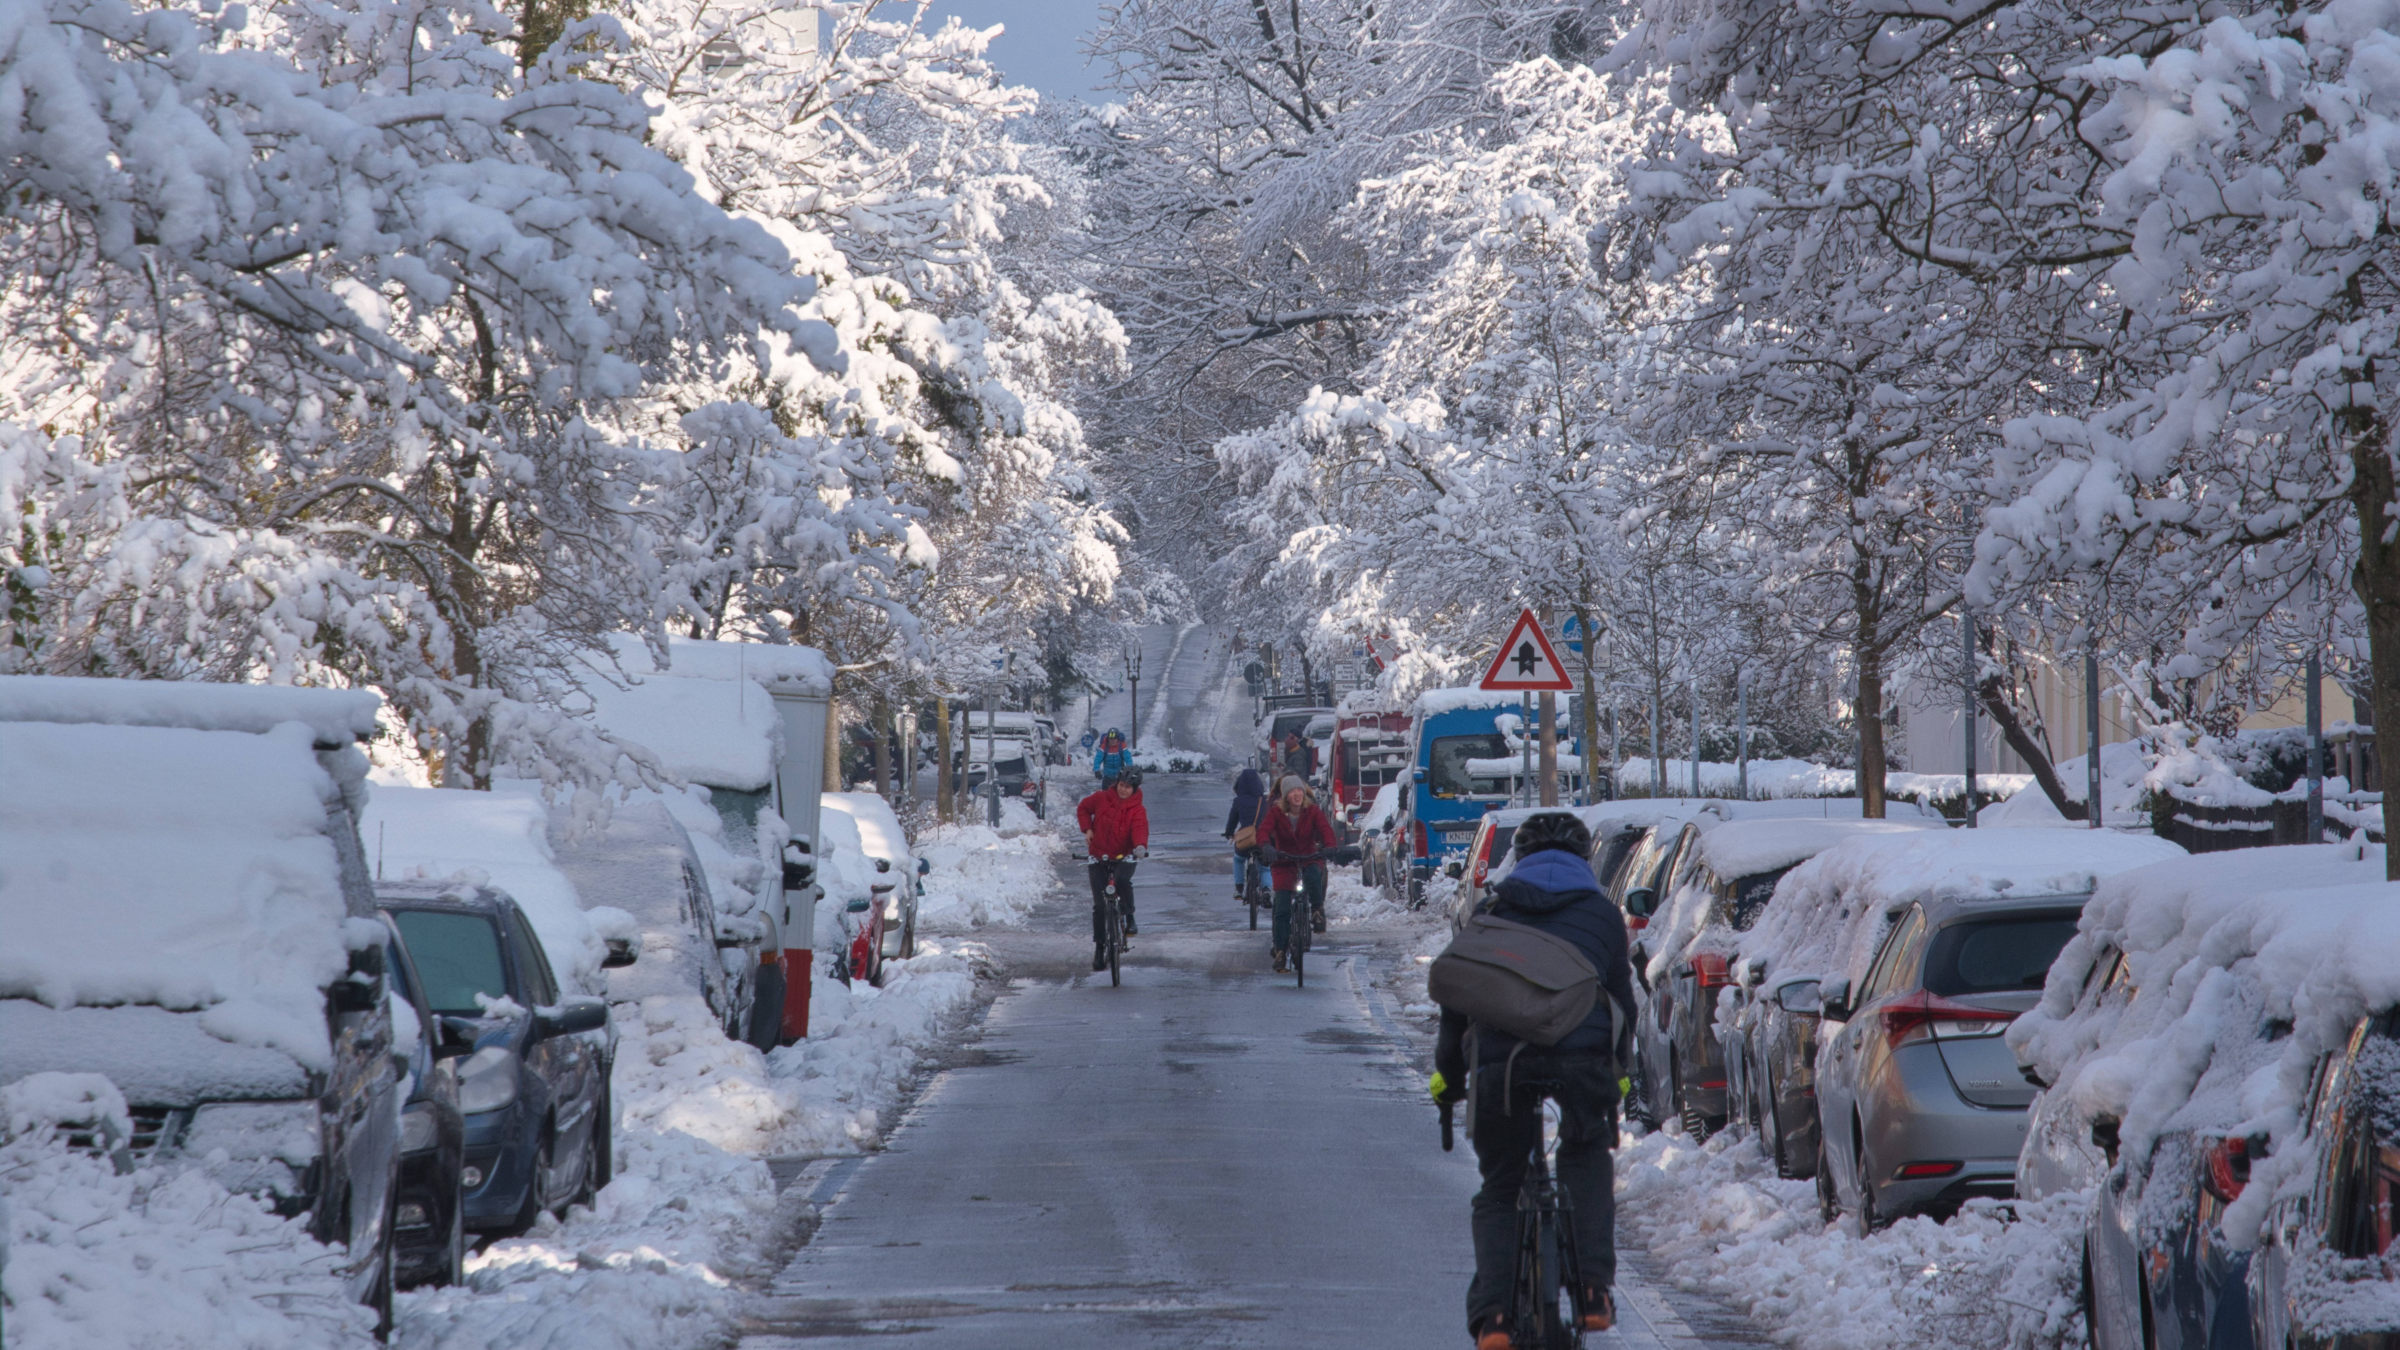 Fahrradfahren im Winter: Bei verschneiten oder glatten Straßen kann das ganz schön gefährlich sein – wir erklären dir, wie du trotzdem sicher auf dem Fahrrad durch den Winter kommst.